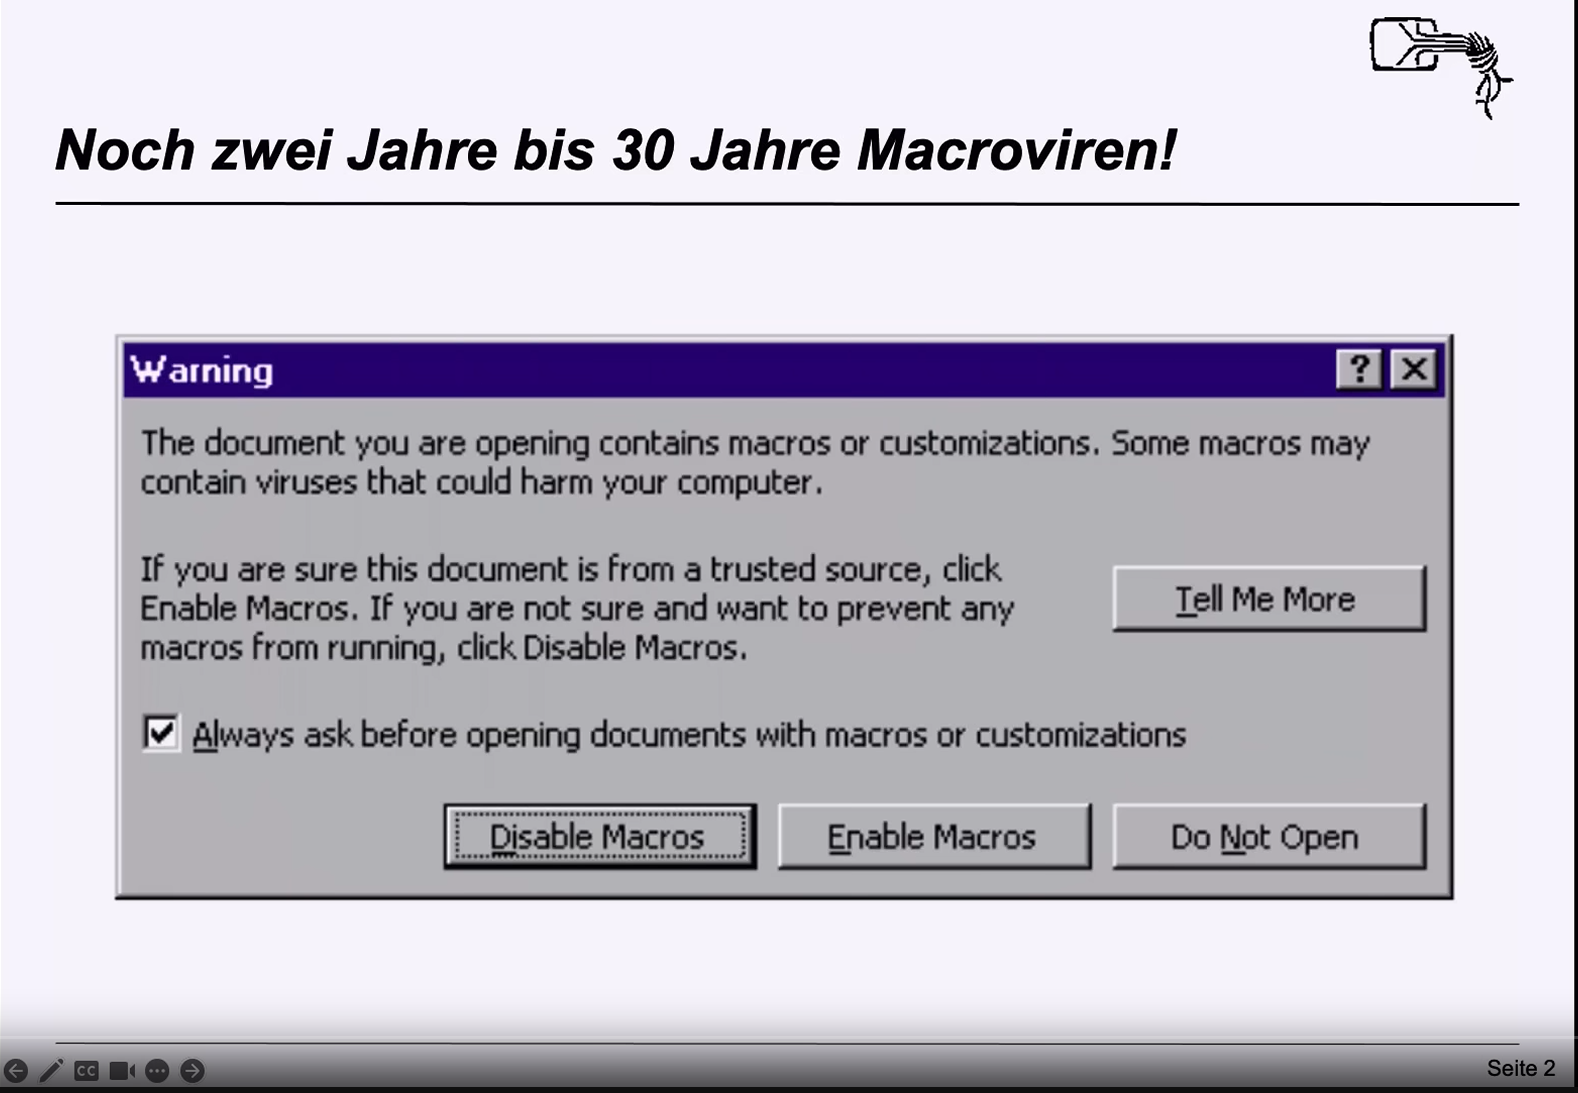 Screenshot der Slide 'Noch zwei Jahre bis 30 Jahre Macroviren!' mit einem Screenshot der englischen Microosft Word Makro-Warnung